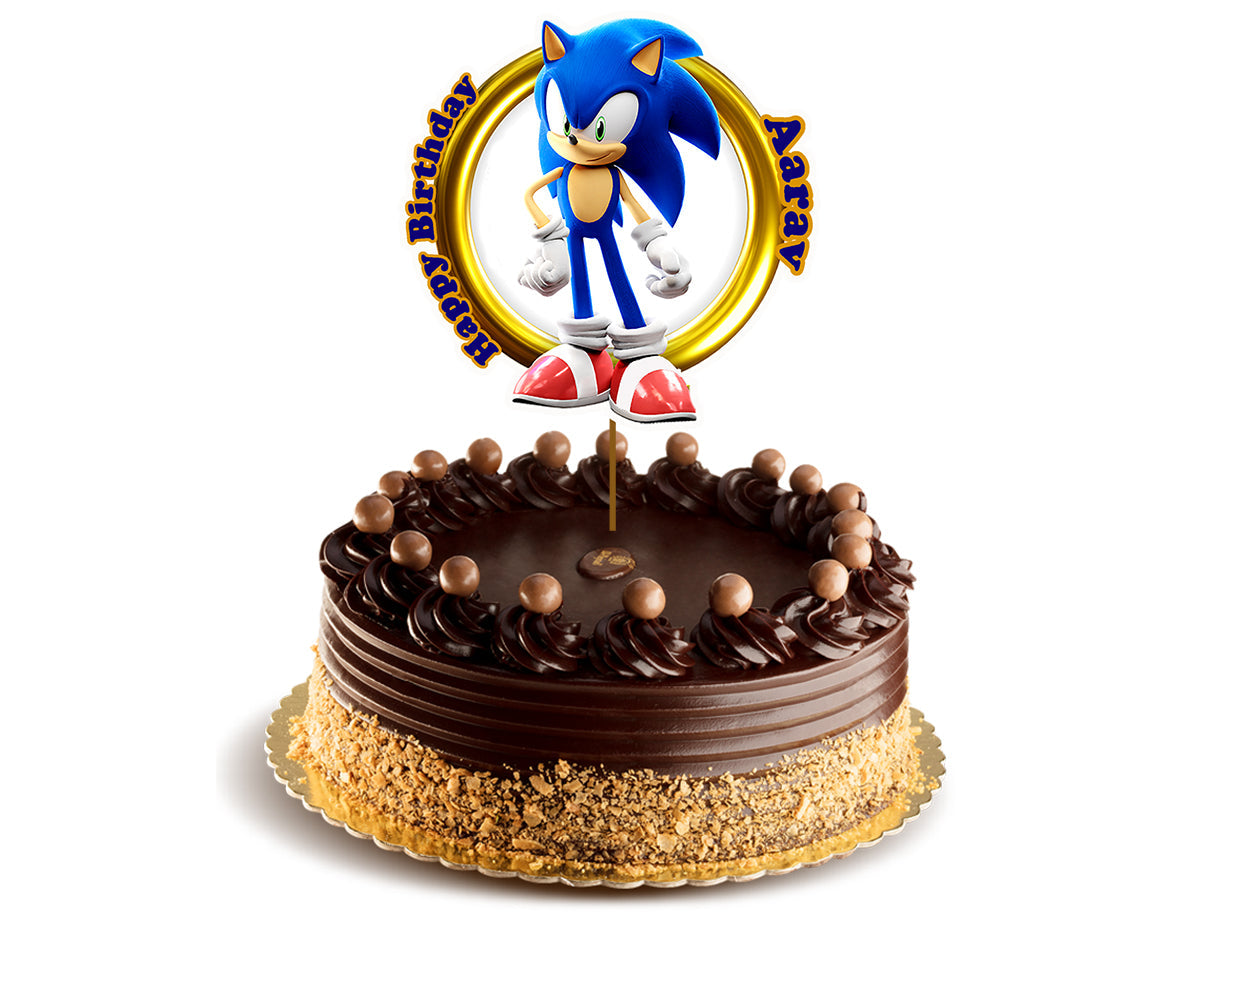 Sonic Cake Topper